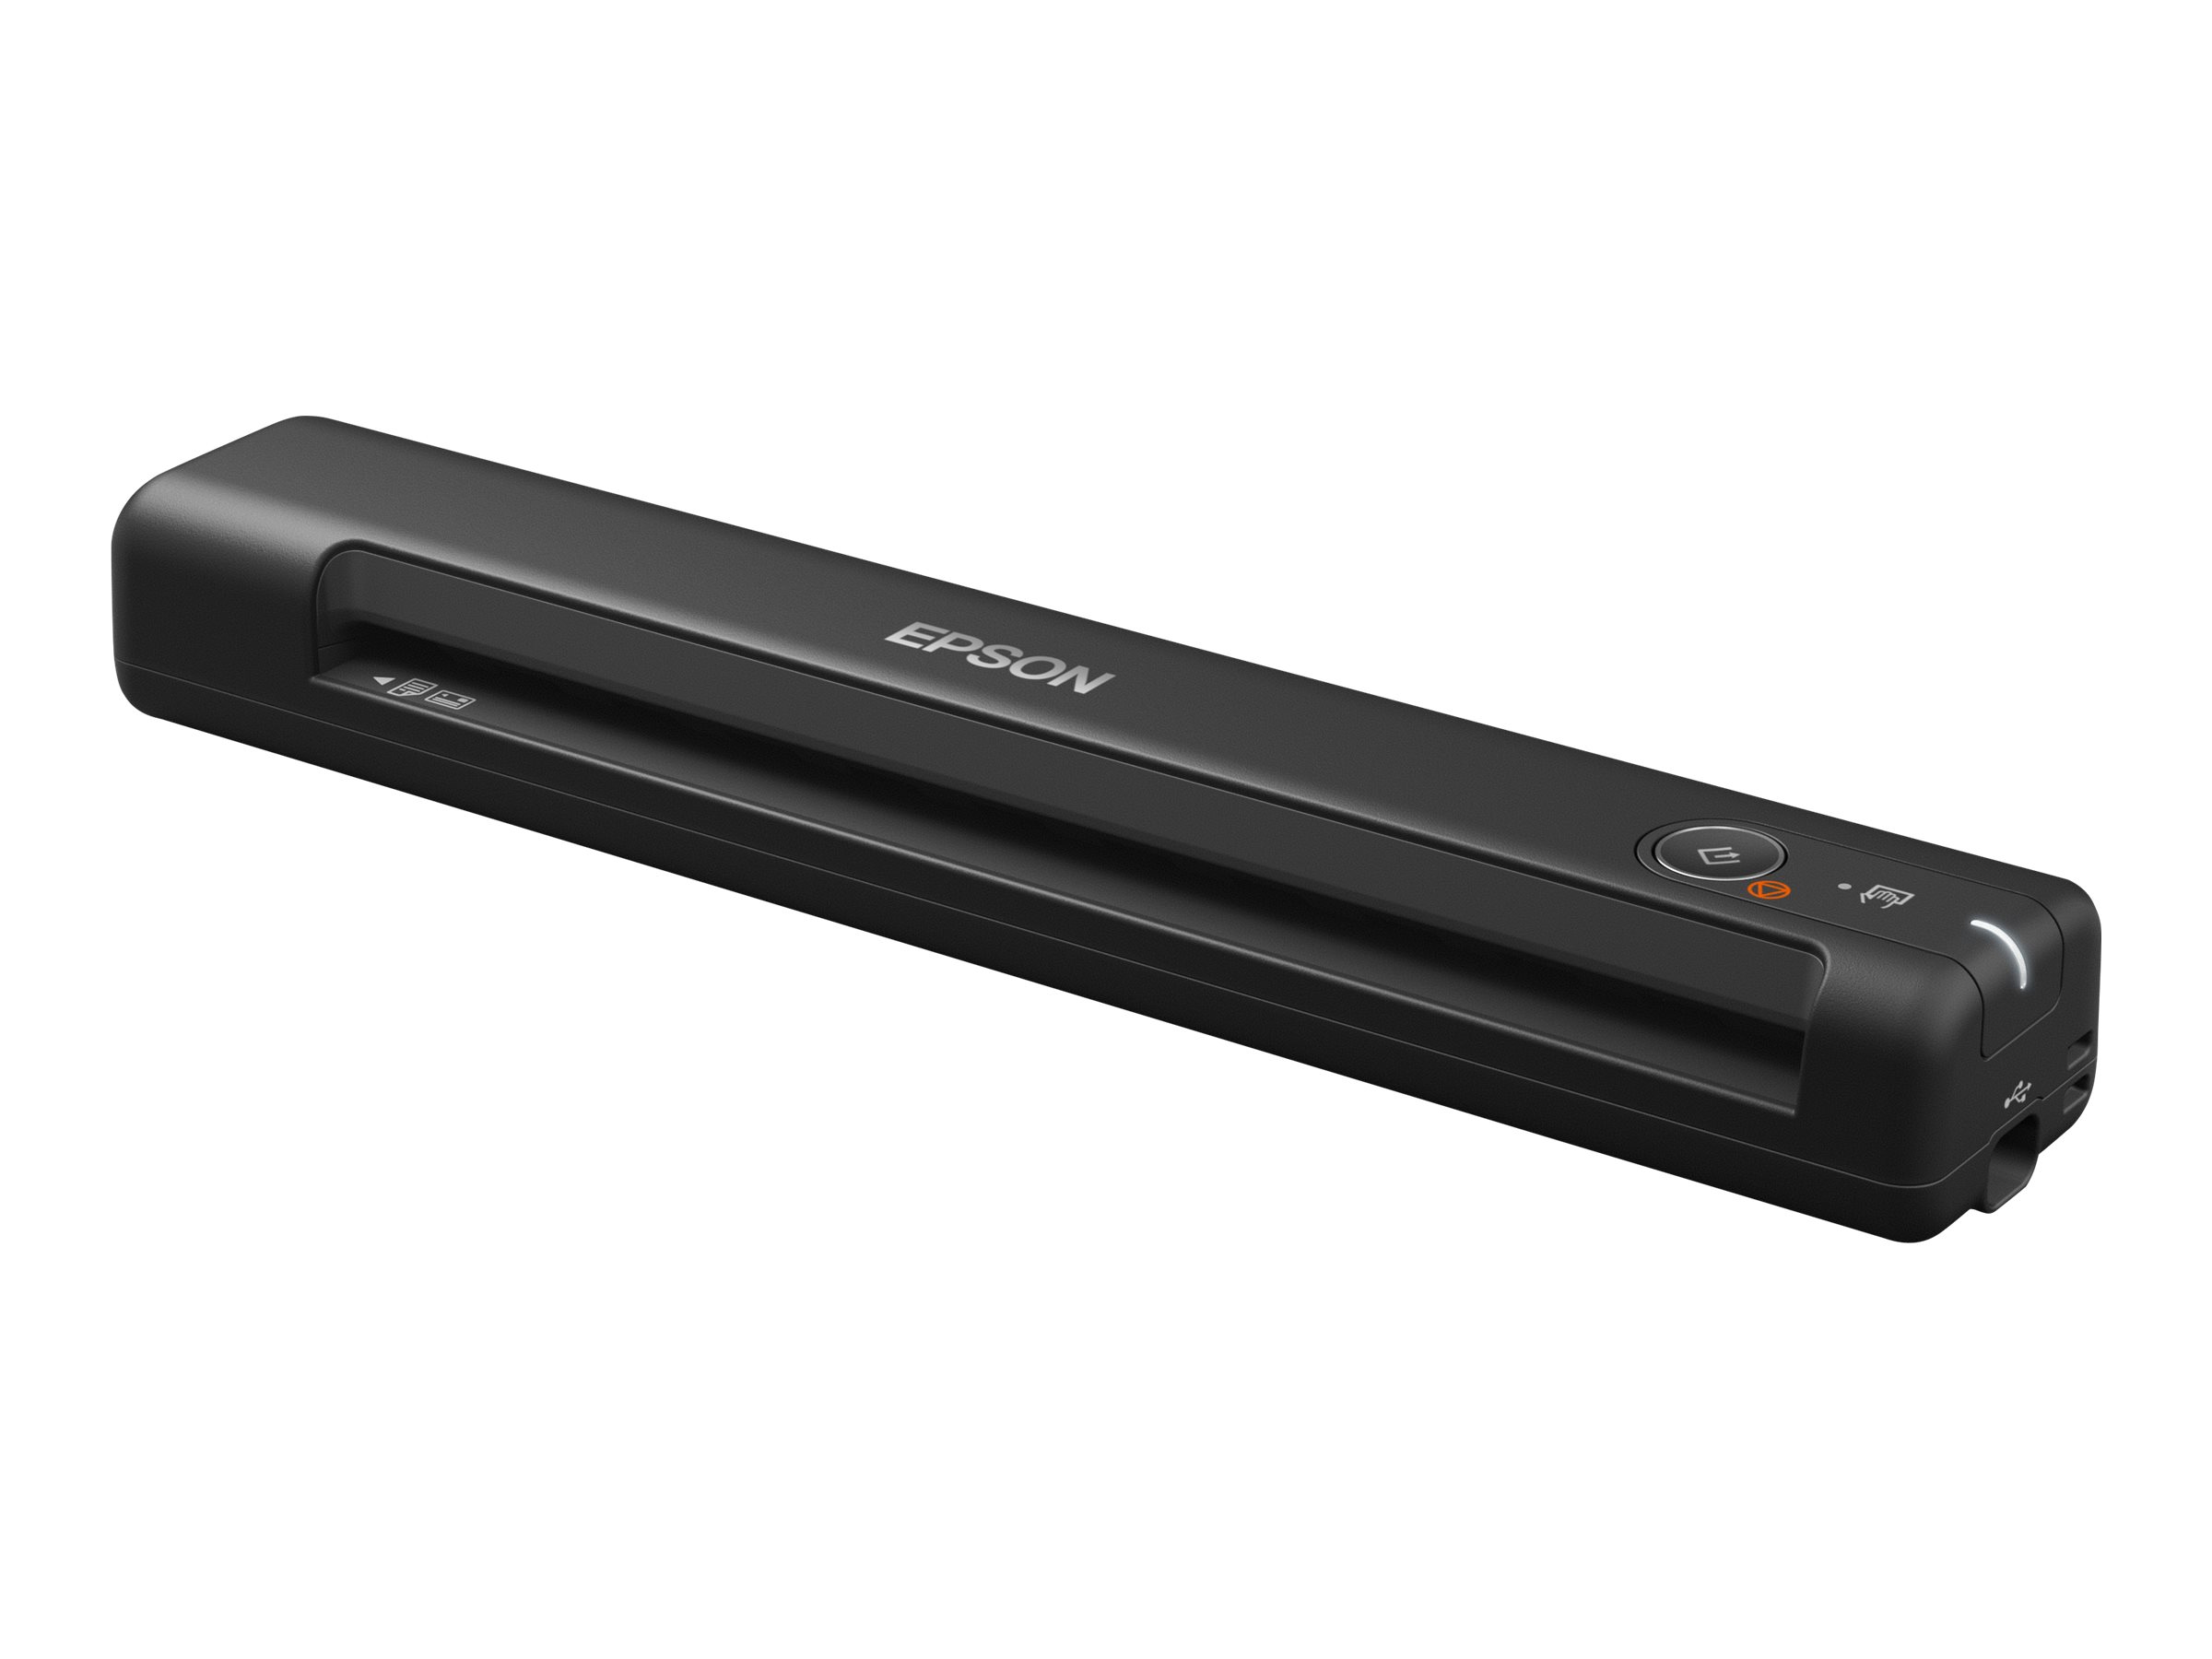 Epson WorkForce ES-50 - scanner de documents A4 - portable - USB 2.0 - 300 ppp x 300 ppp - 10ppm